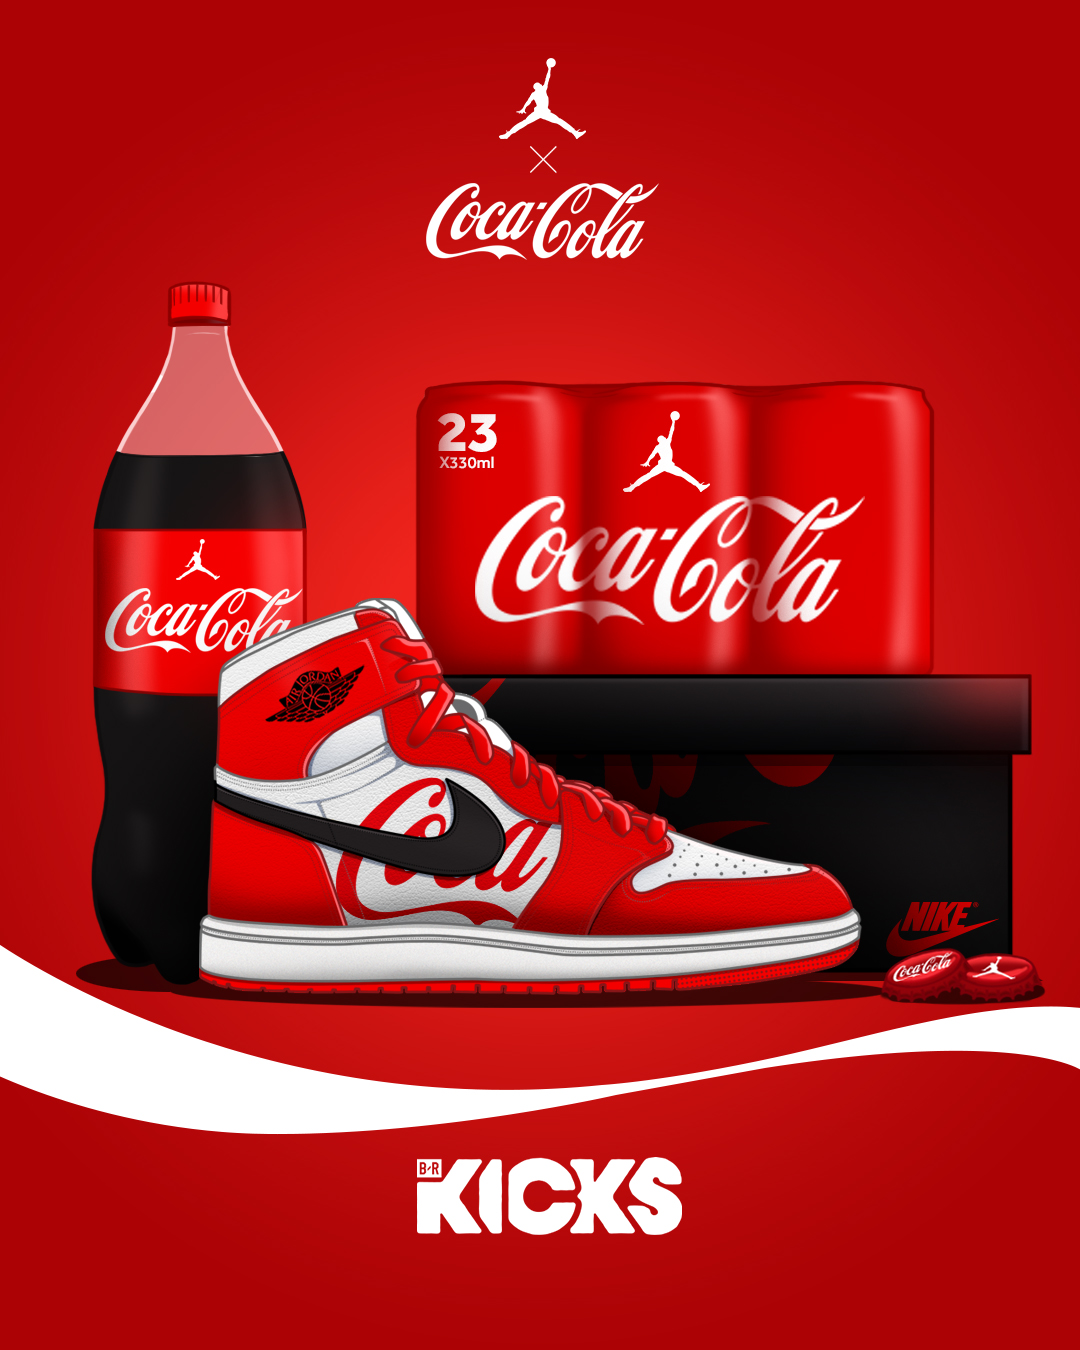 Coca-Cola x Air Jordan 1 